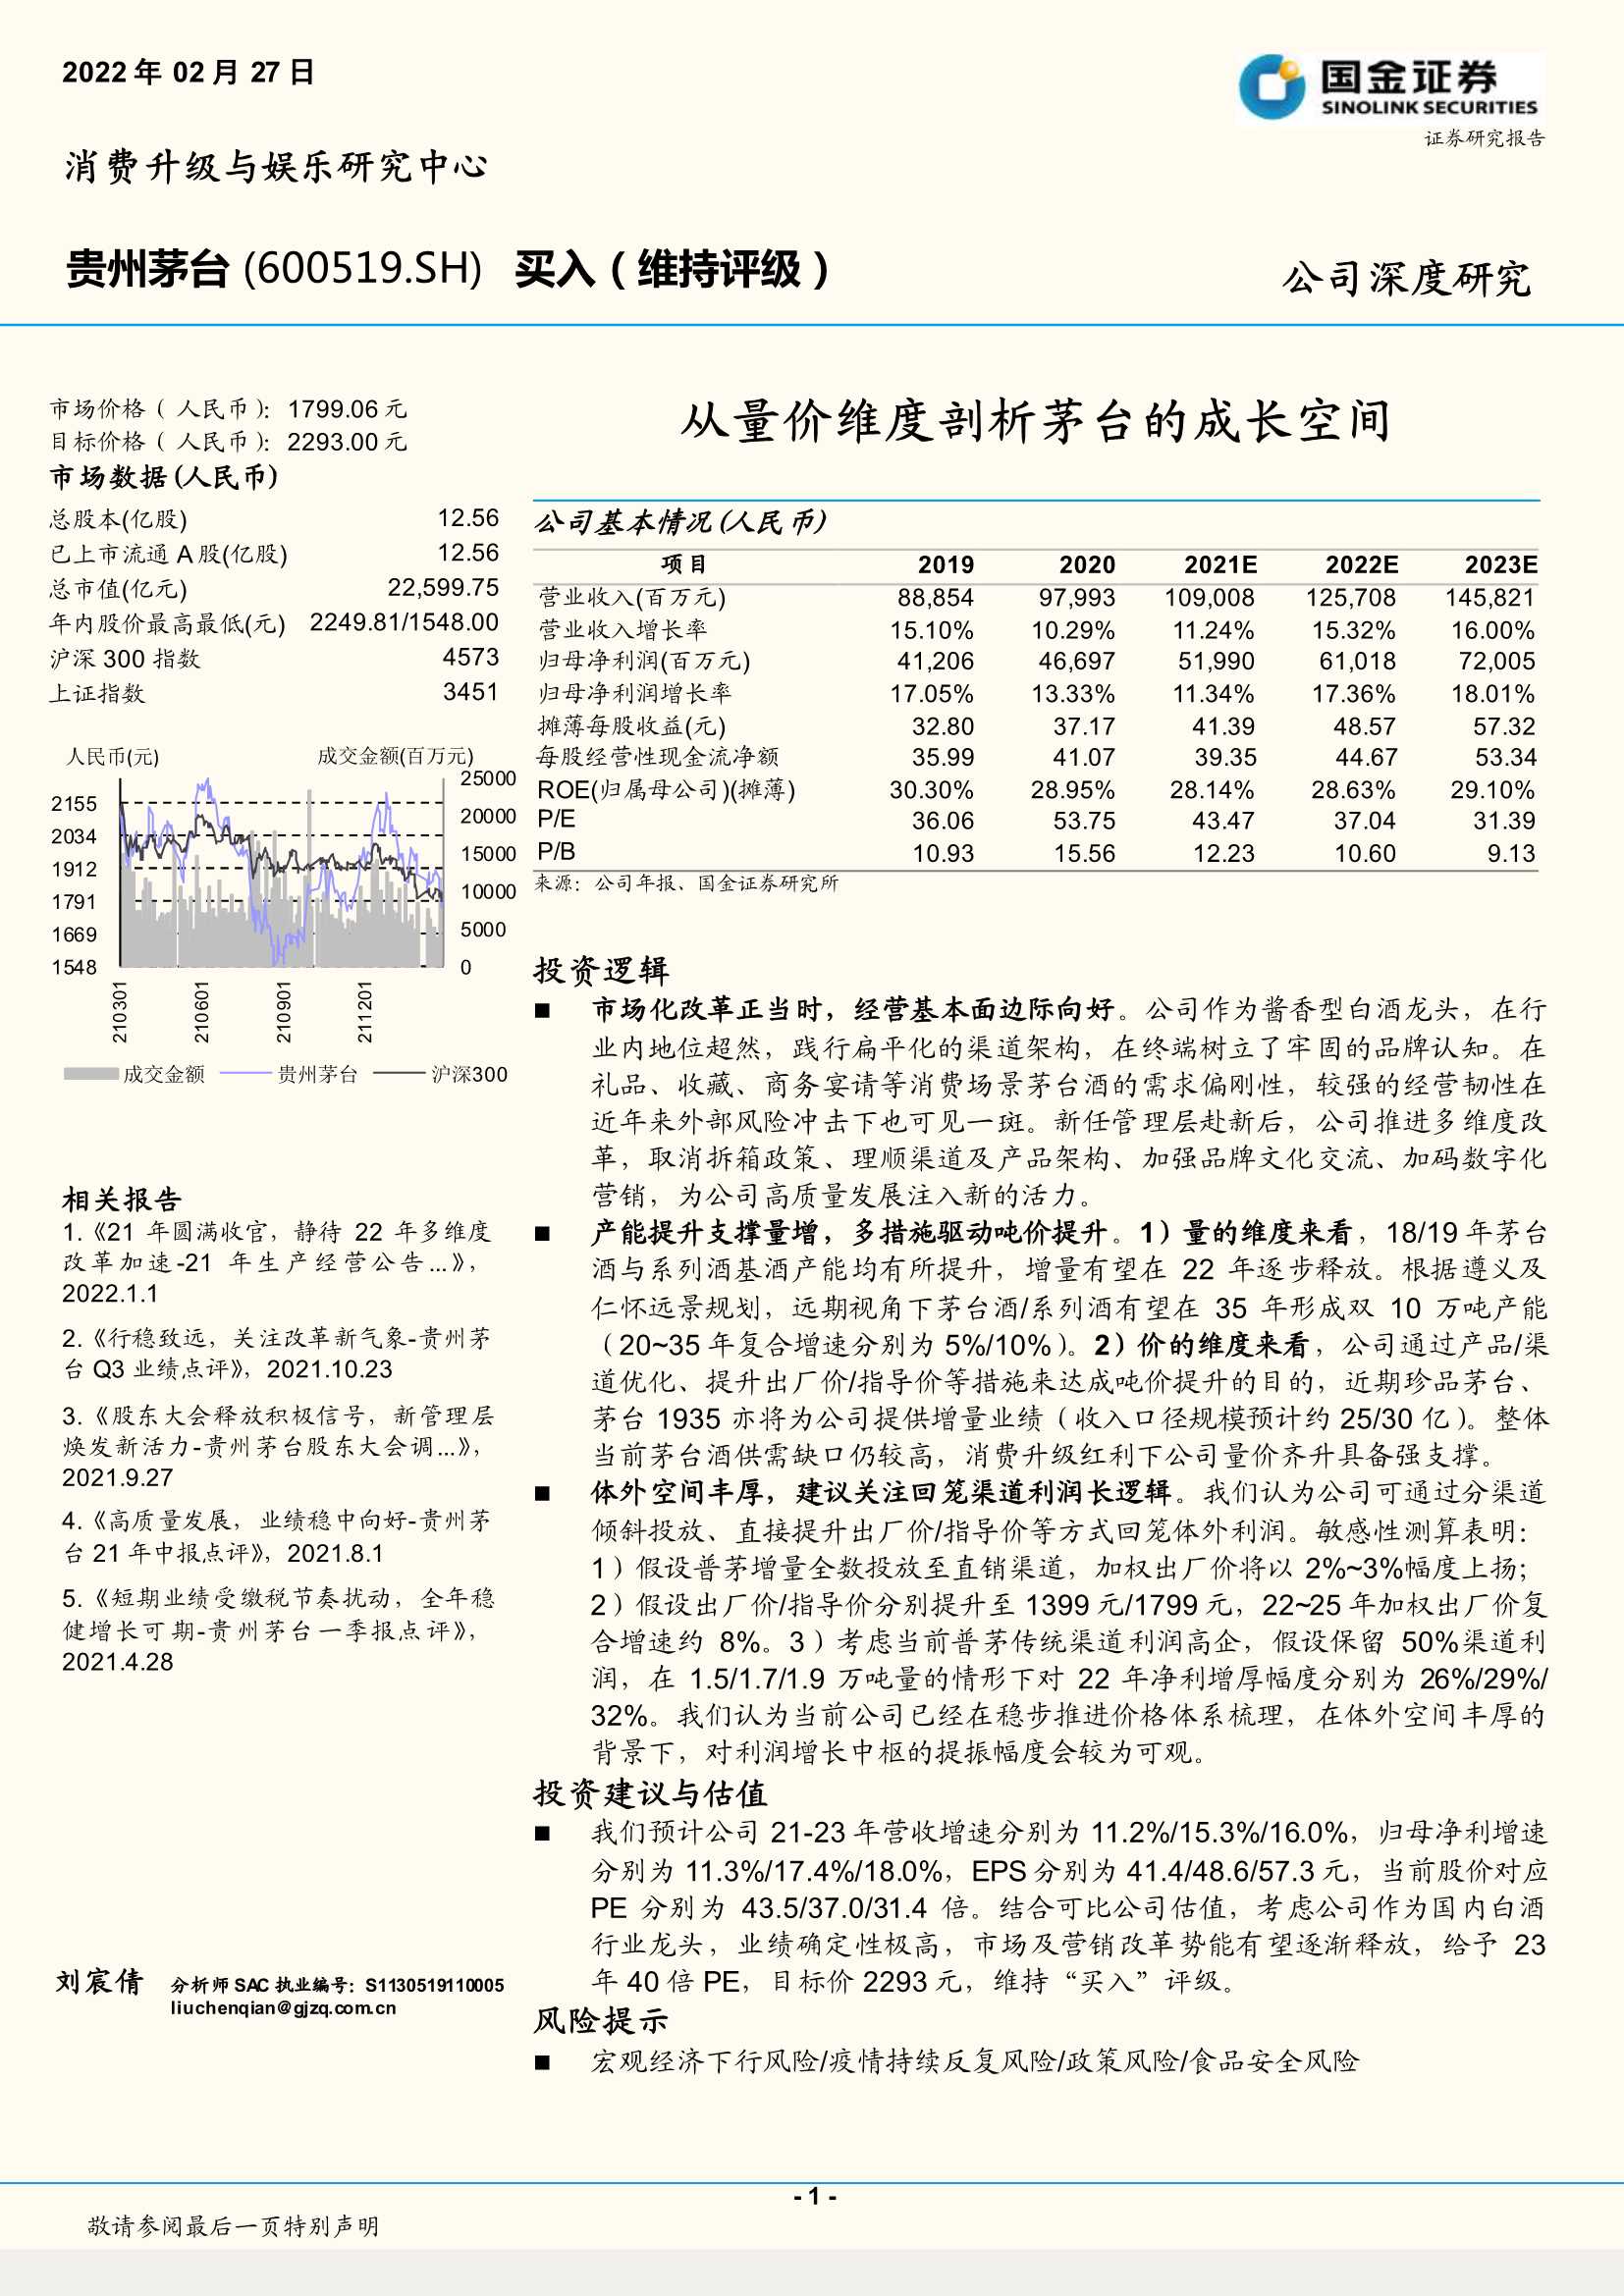 国金证券-贵州茅台-600519-从量价维度剖析茅台的成长空间-20220227-27页